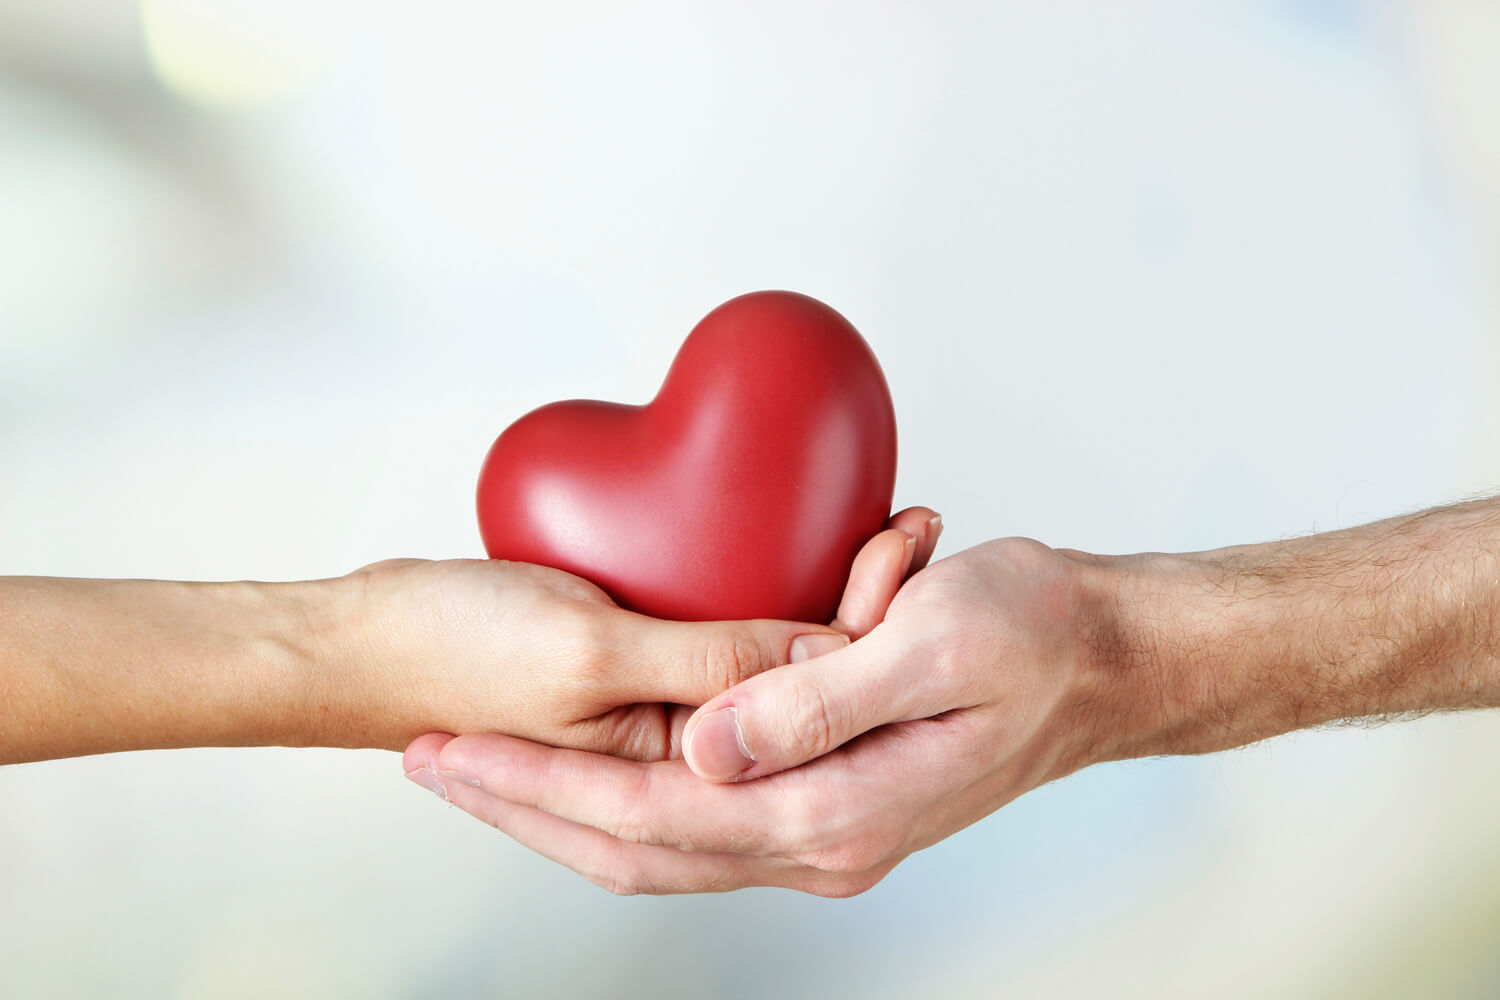 Donar órganos es sembrar esperanza de vida en muchas familias